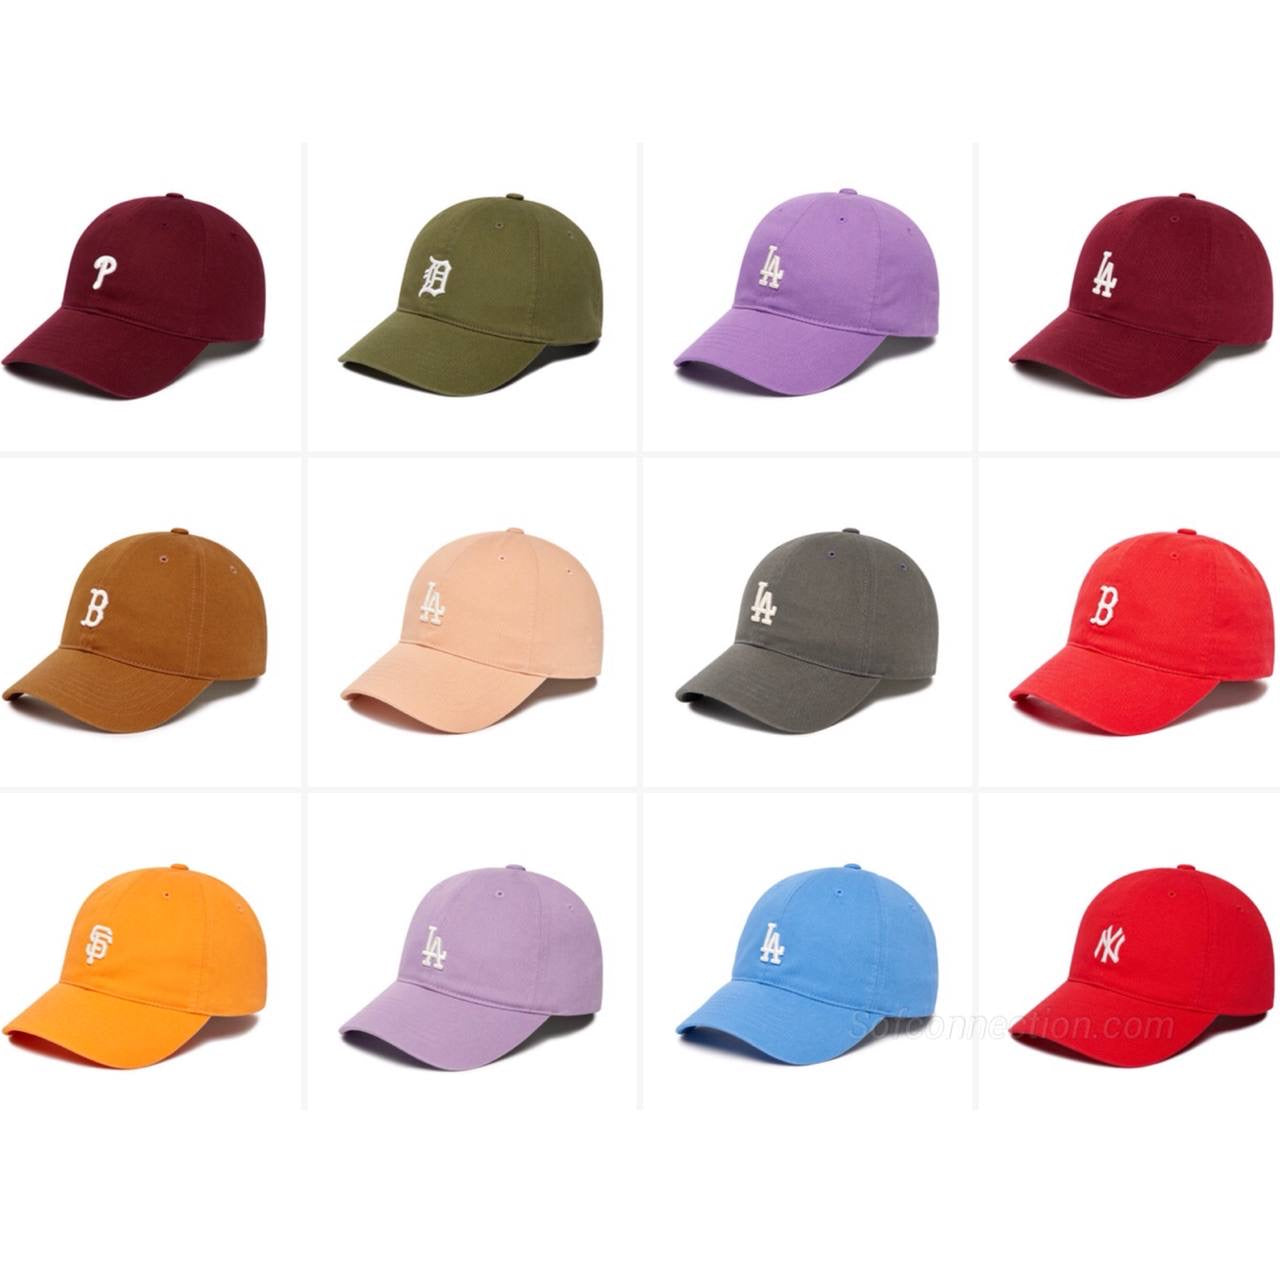 MLB YANKEES NEWERA Cap - Collection #4